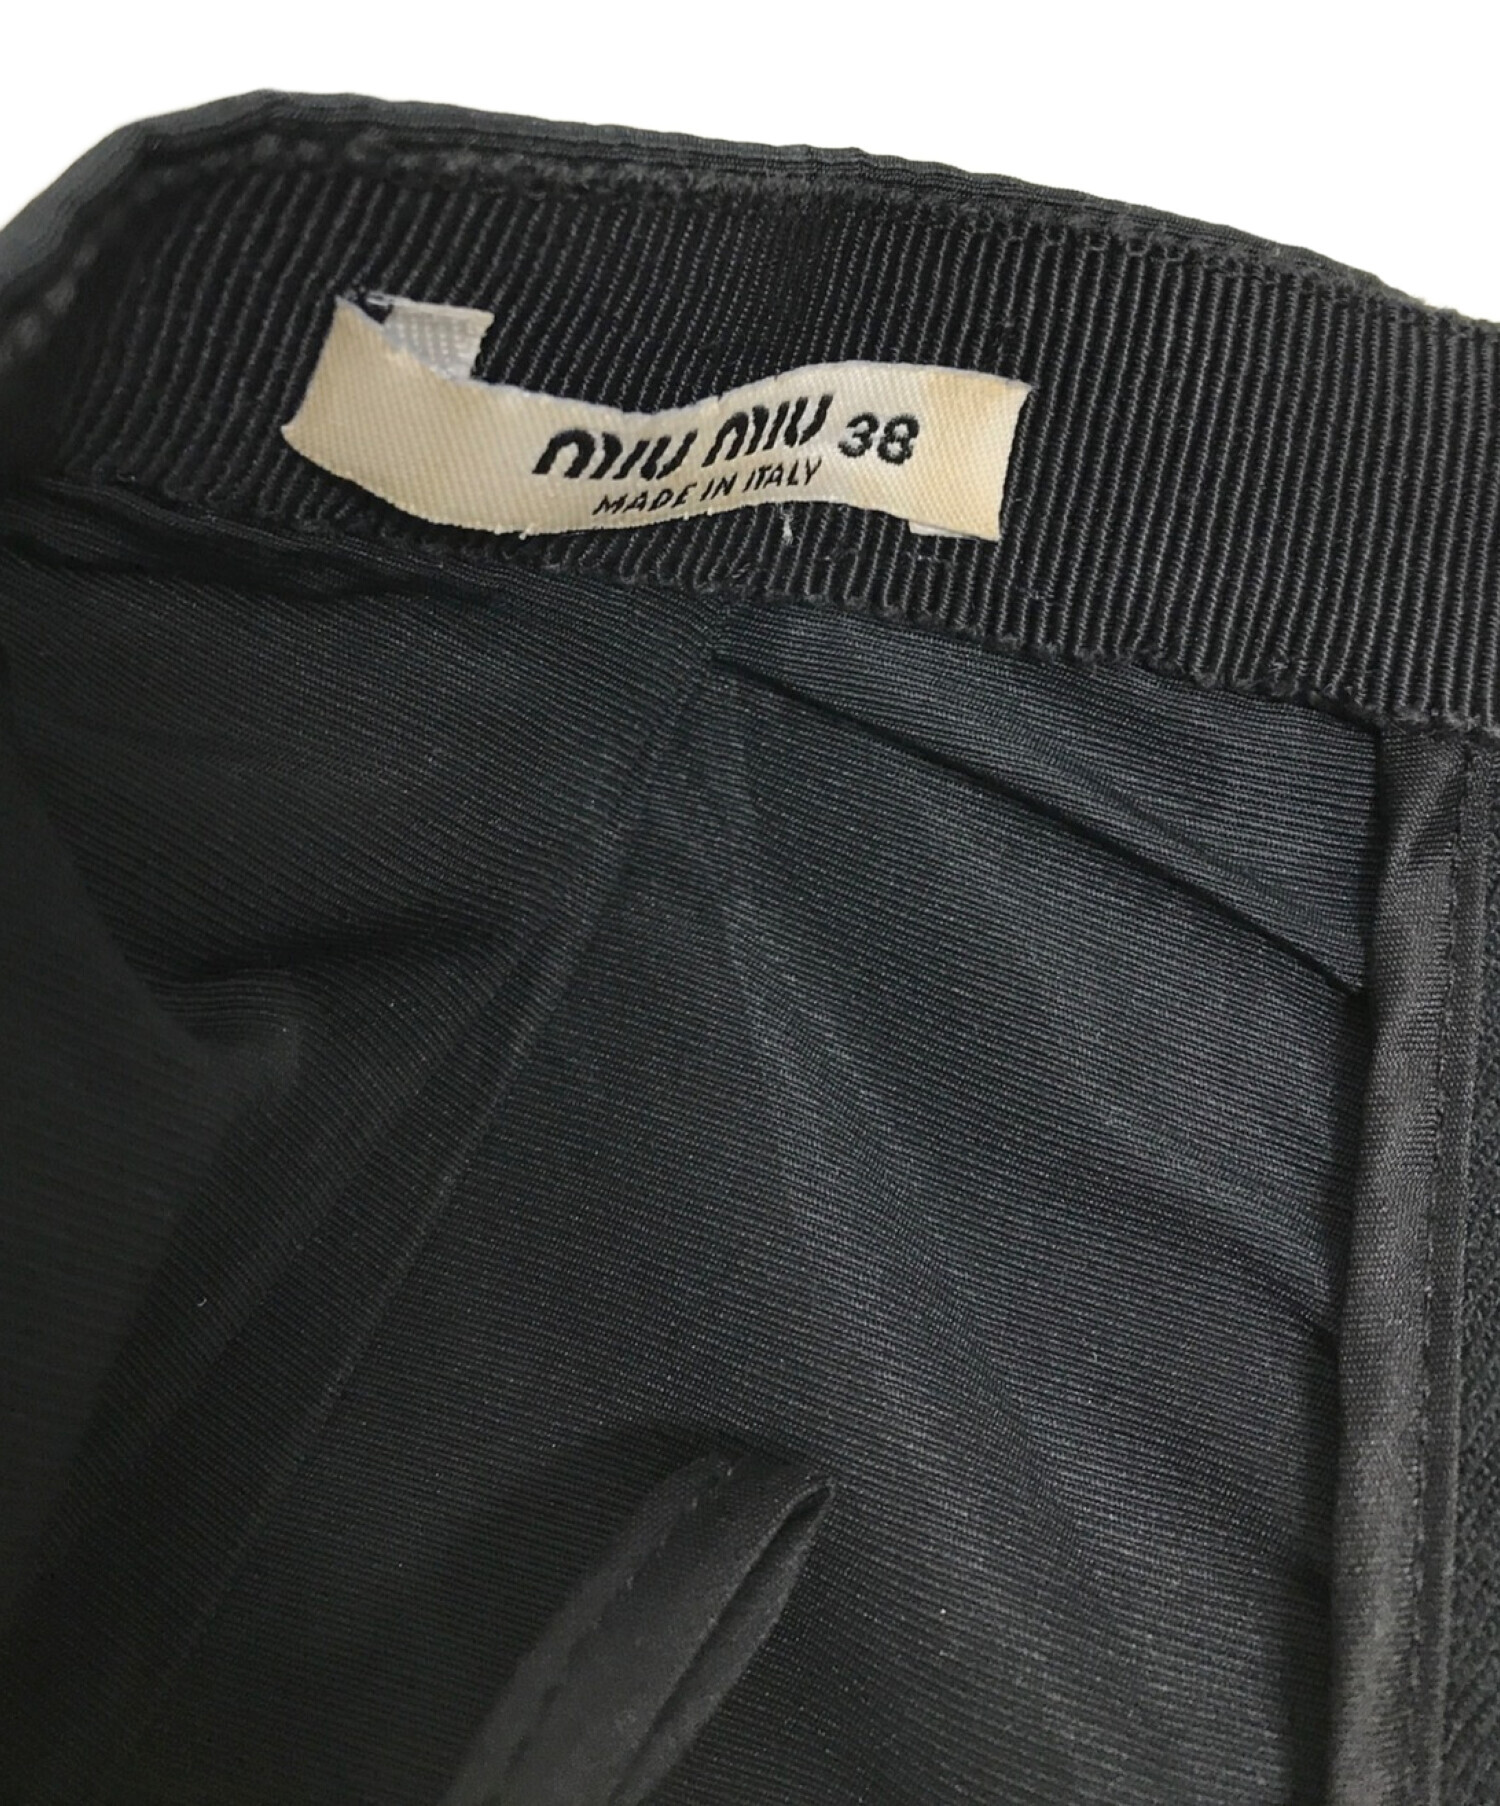 MIU MIU (ミュウミュウ) バルーンショートパンツ ブラック サイズ:38